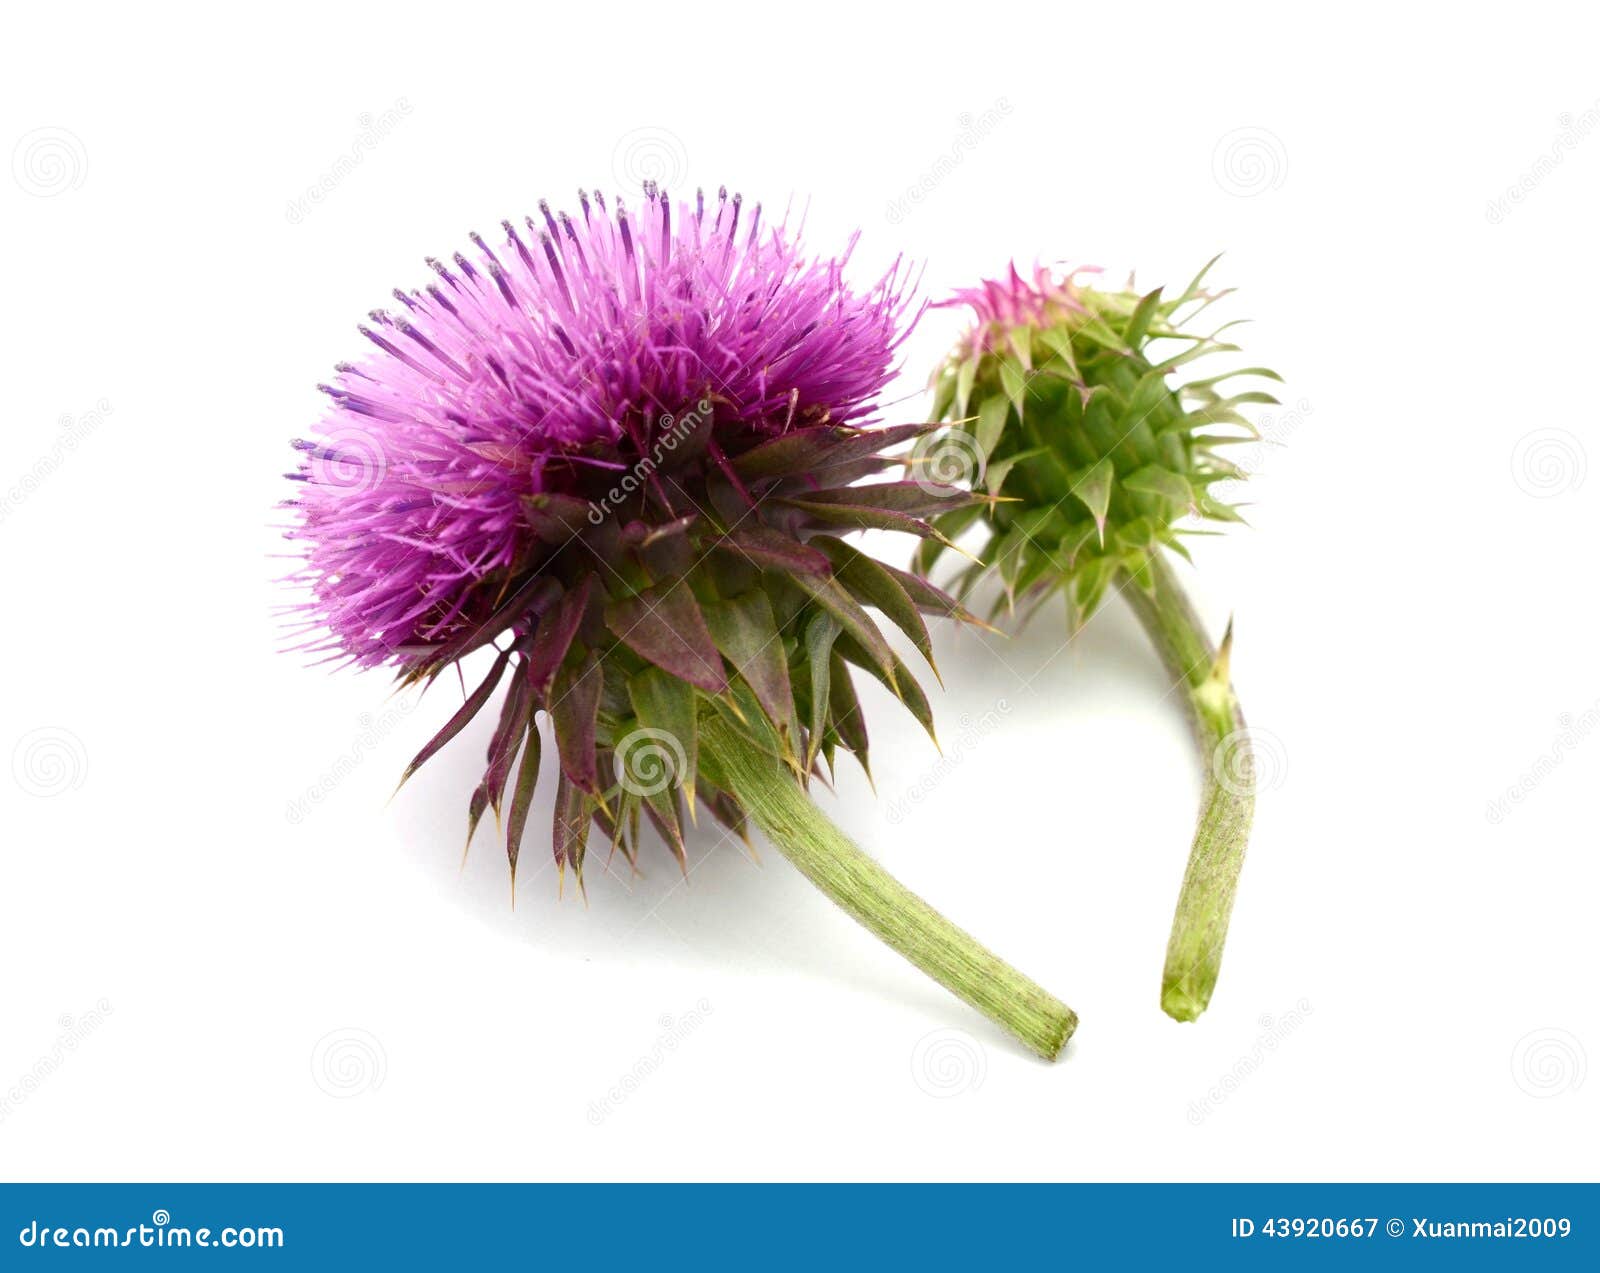 Thistle flower stock image. Image of background, scottish - 43920667